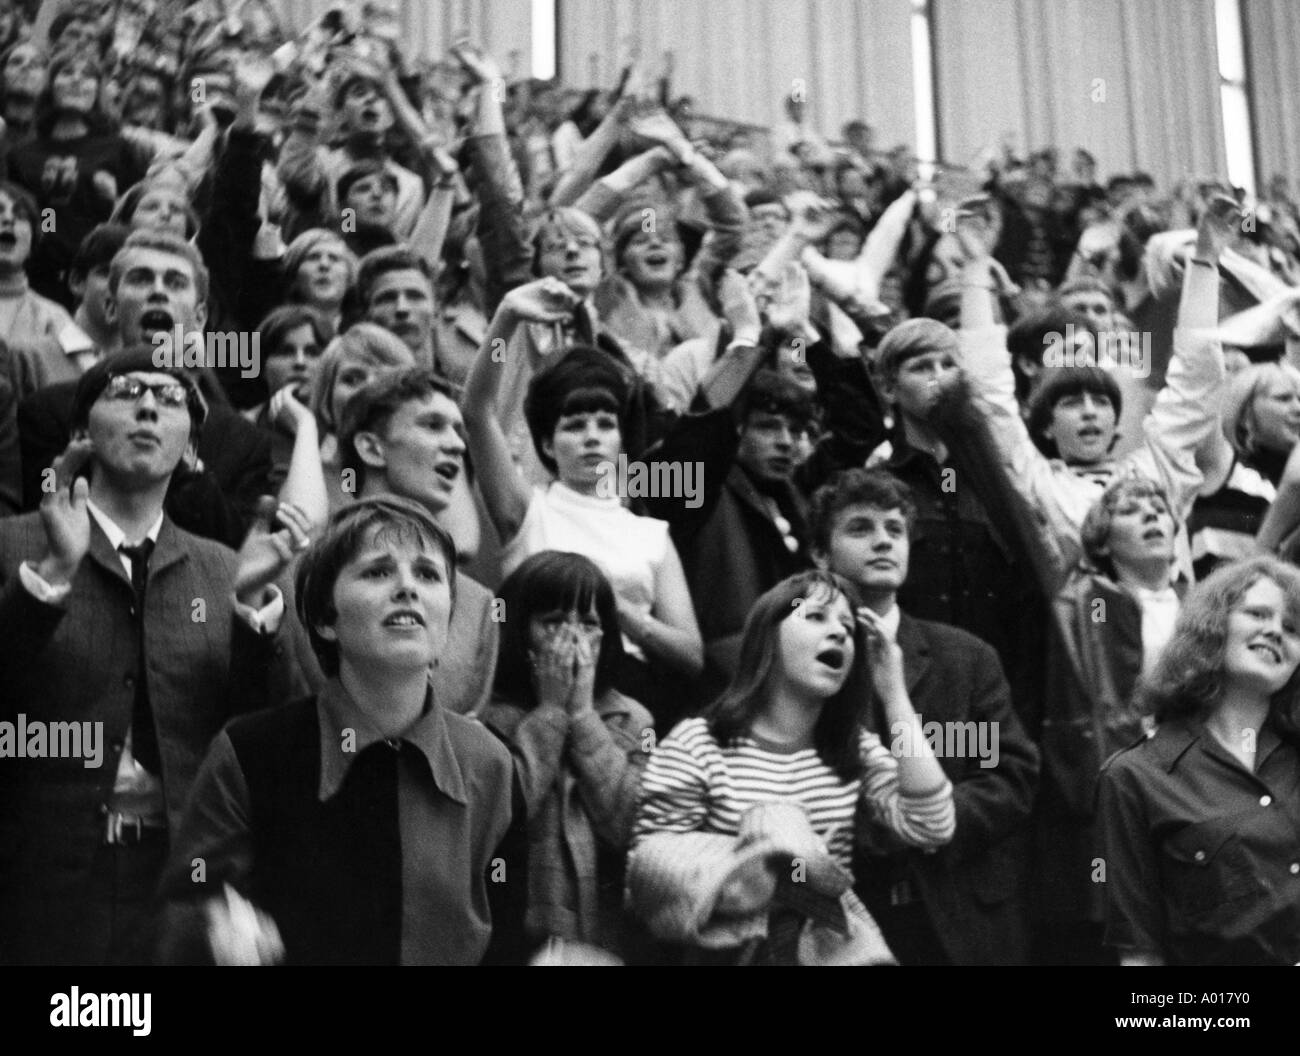 Die Beatles, Konzert in Essen, Ruhrgebiet, Gruga-Halle, 1966, 1960er Jahre, der sechziger Jahre, England, London, Großbritannien, britische pop-Band, Musik, Musiker, Gruppe, pop Musik, Sänger, Jugendliche in der Gruga-Halle, die Masse der Zuschauer, Jugendliche, Mädchen, jungen, Jugendliche, Stockfoto